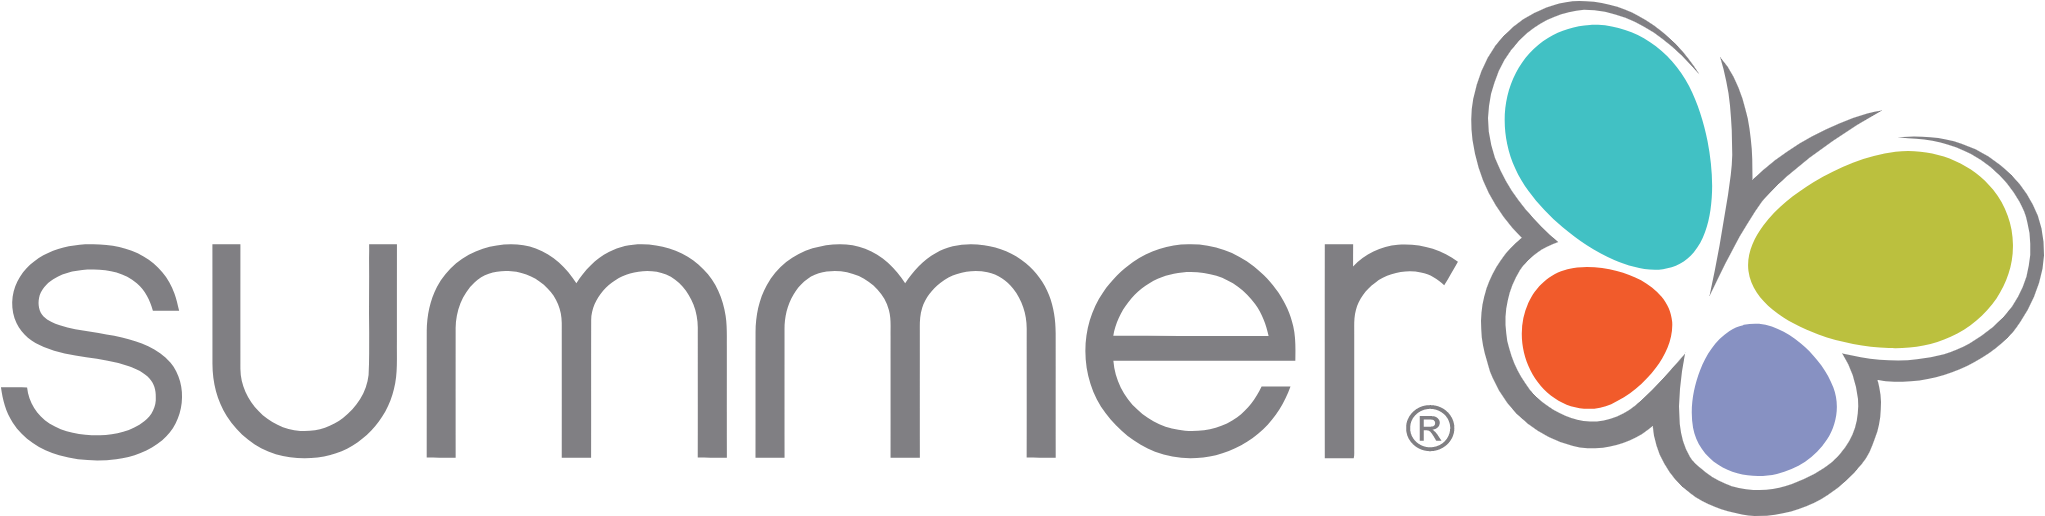 Summer Infant logo large (transparent PNG)